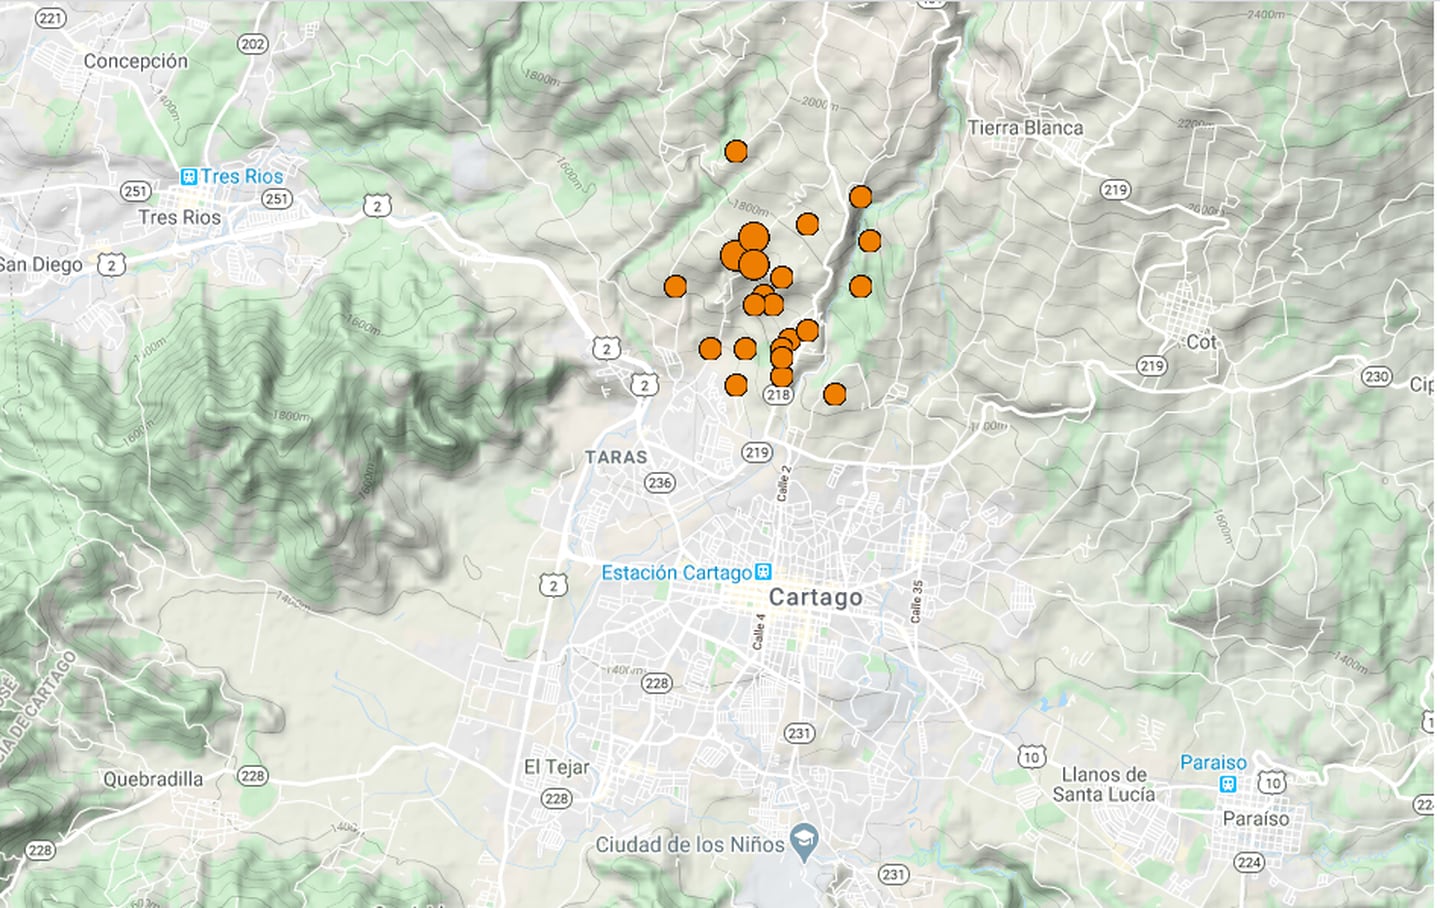 En abril hubo una seguidilla de sismos superficiales entre Quircot y Tierra Blanca, al norte de la ciudad  de Cartago. Imagen: RSN.